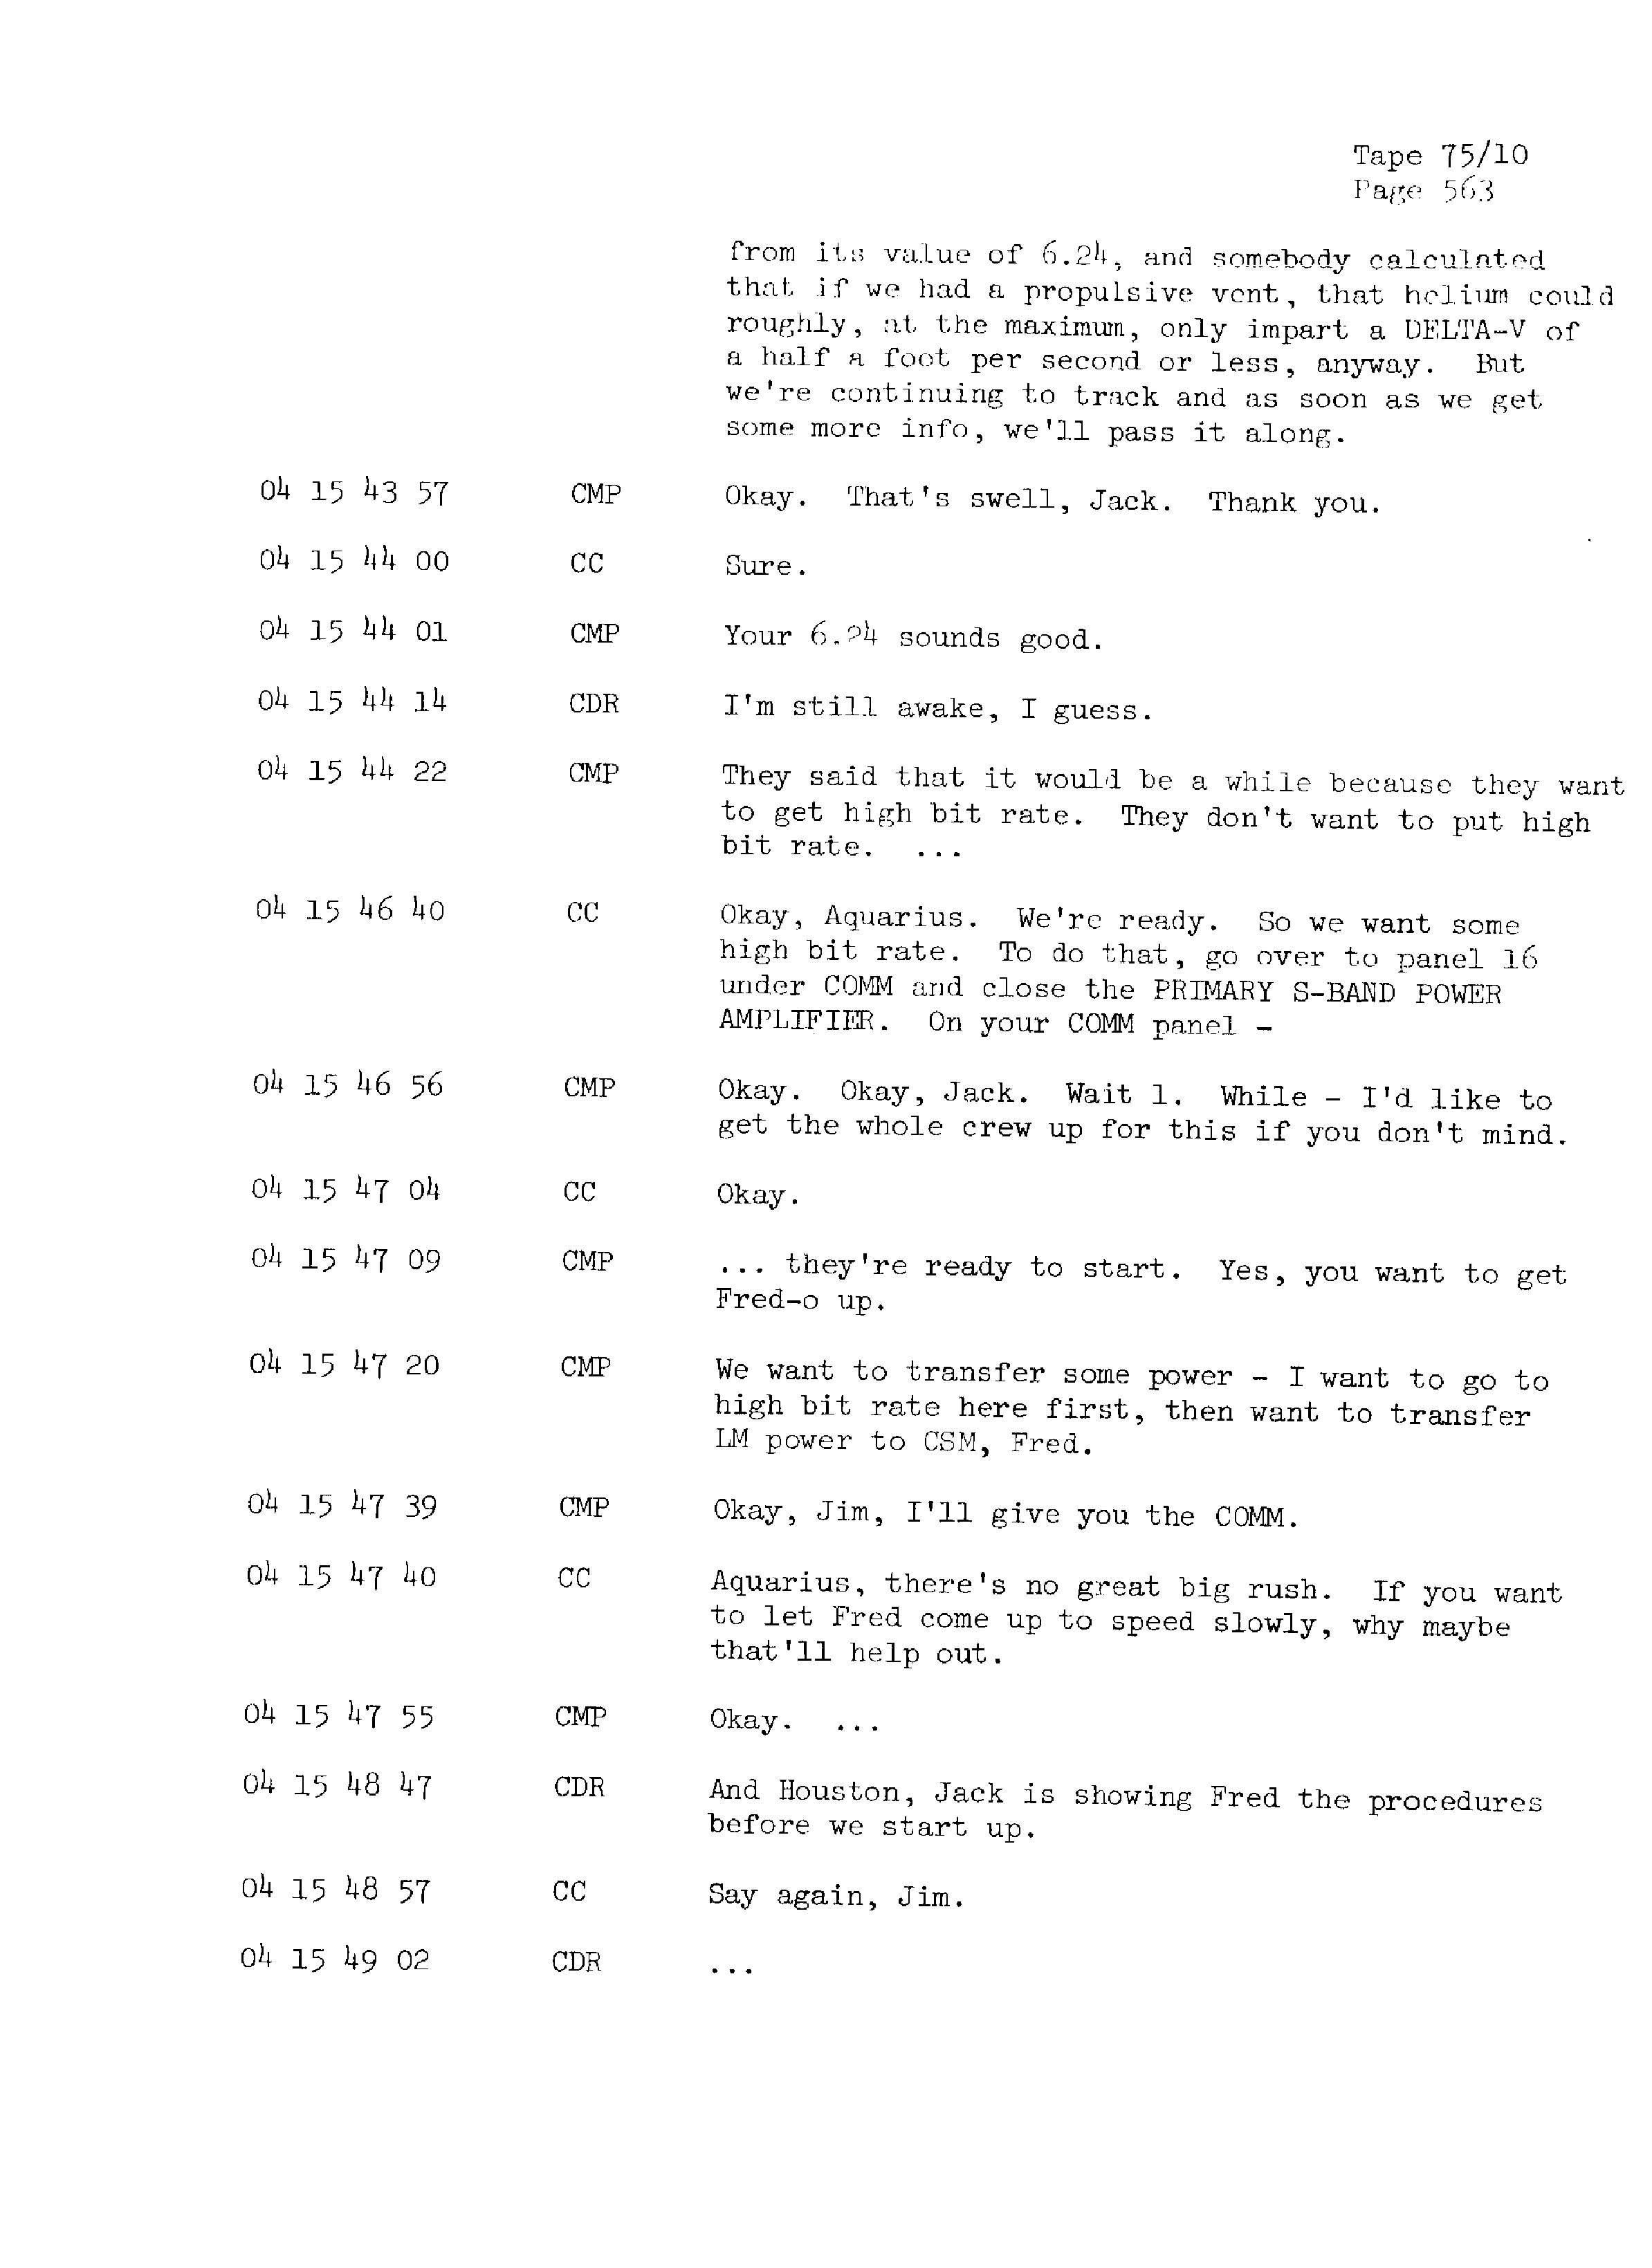 Page 570 of Apollo 13’s original transcript